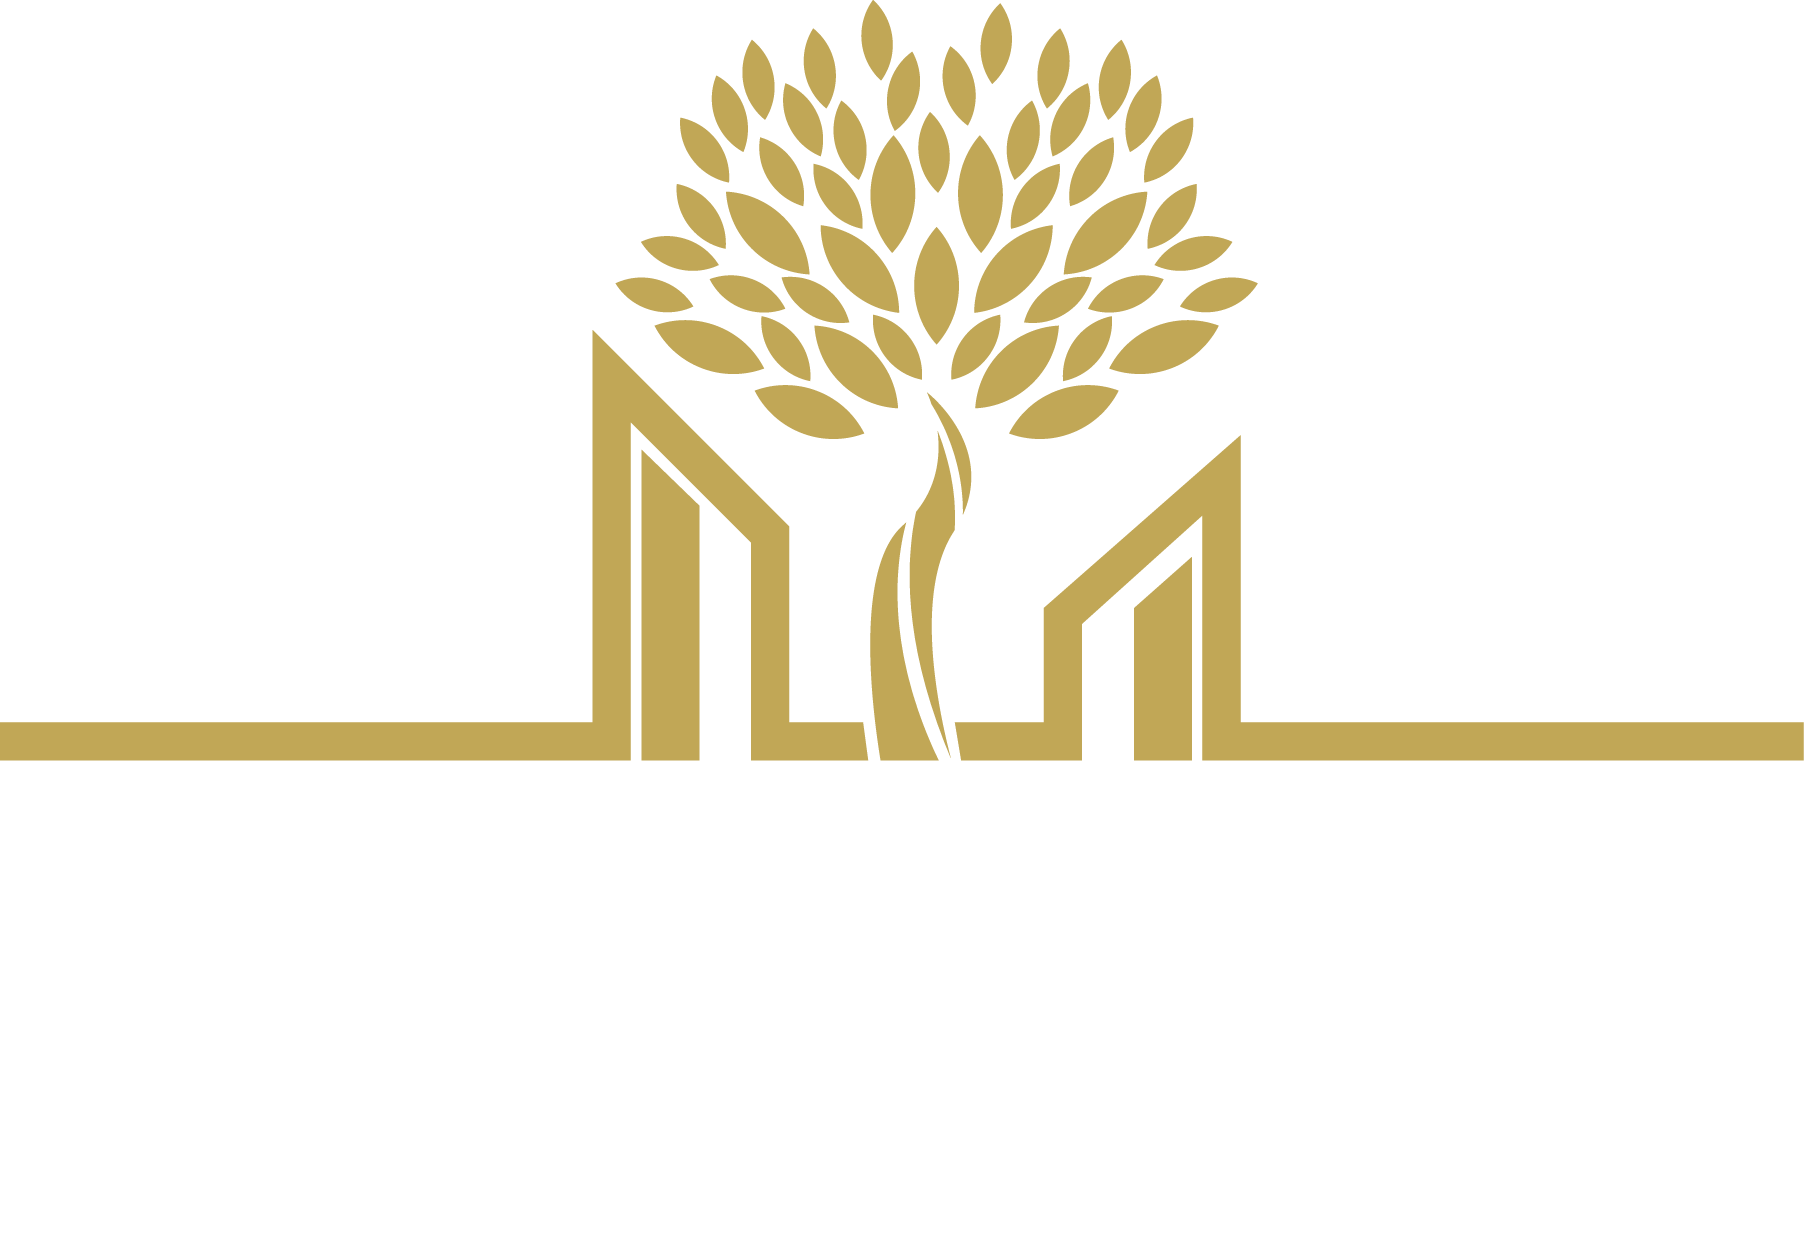 Σ.Ε.ΒΙ.ΠΕ.Θ. - Σύνδεσμος Επιχειρήσεων Βιομηχανικής Περιοχής Θεσσαλονίκης